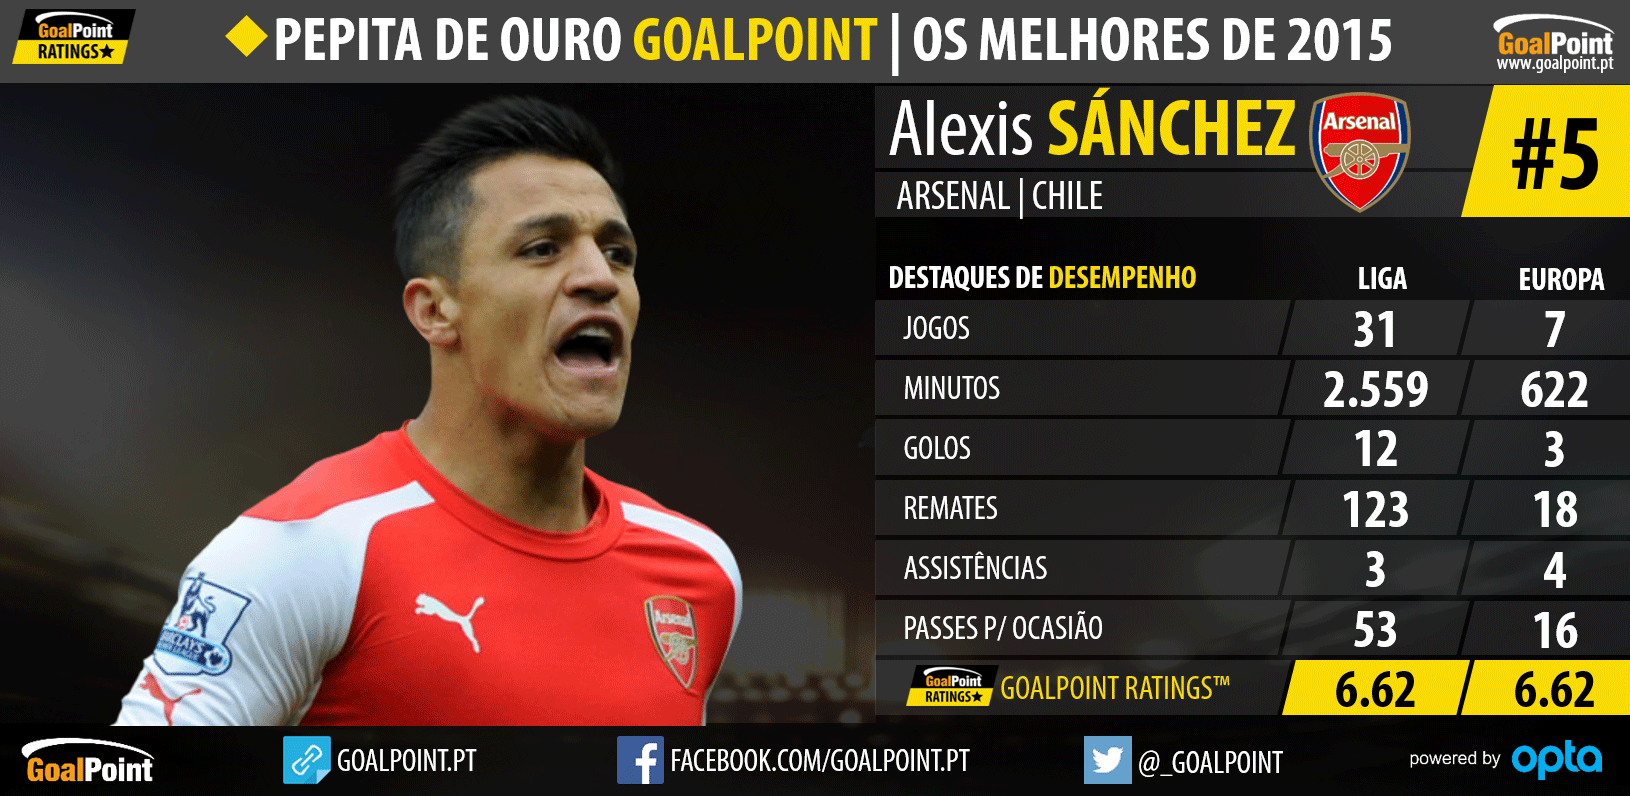 Pepita de Ouro GoalPoint™ 2015: Os melhores do Mundo - Aleix Sanchéz